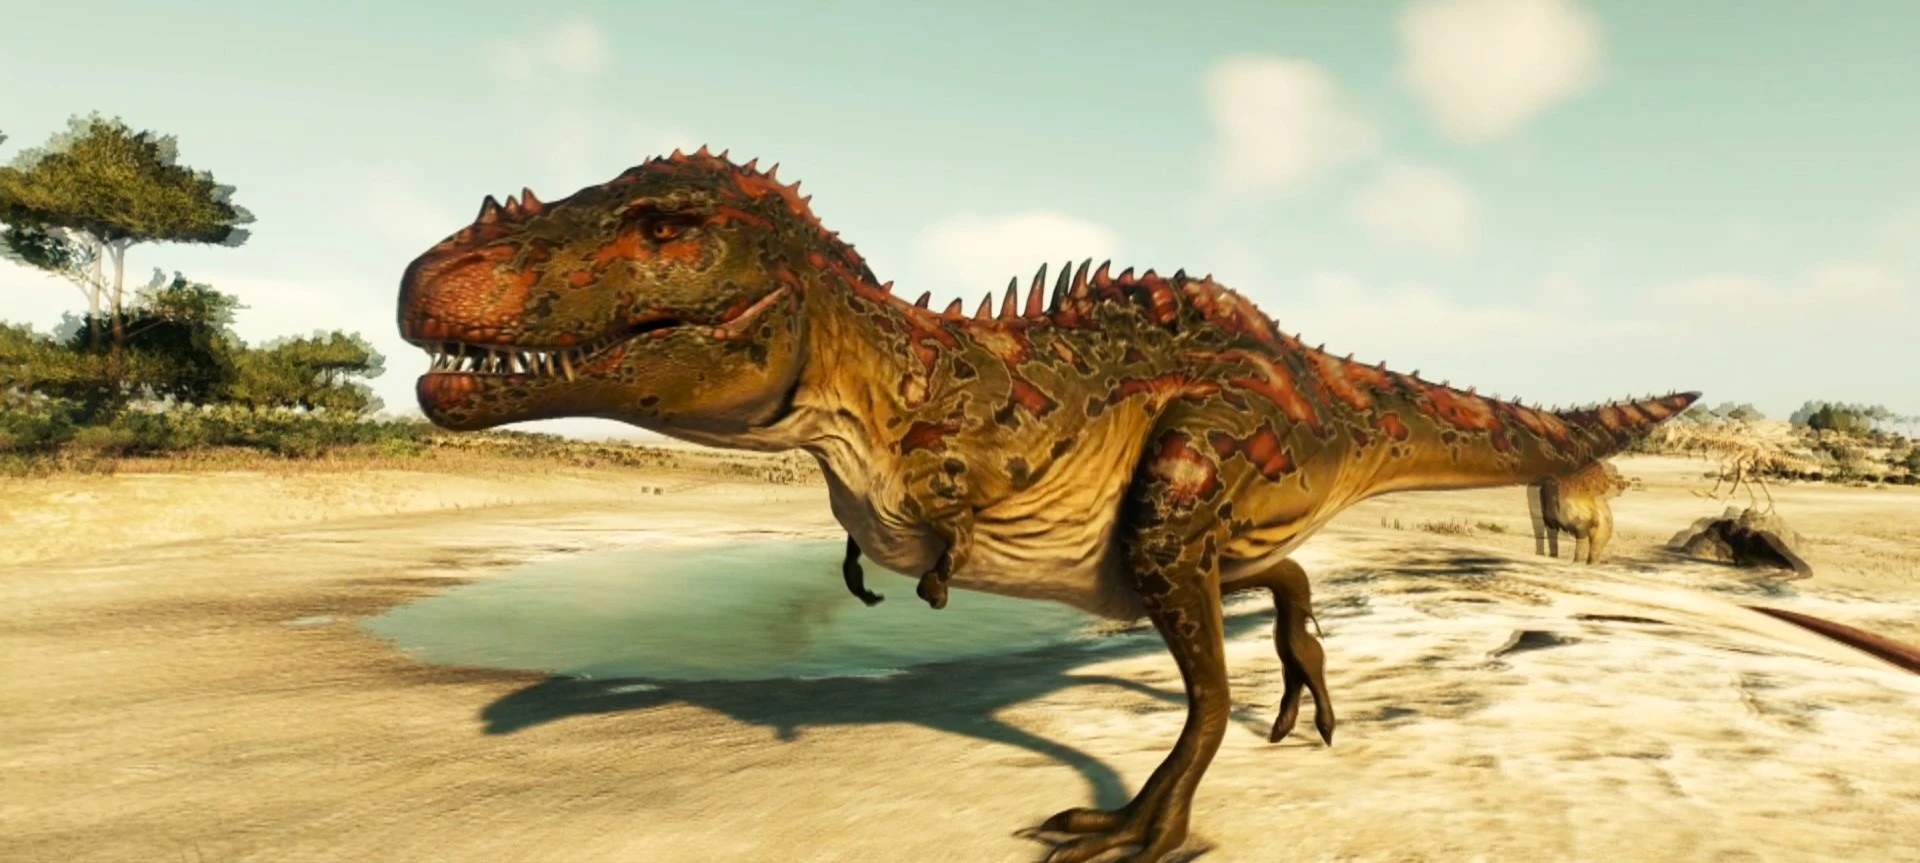 Accurate Tarbosaurus At Jurassic World Evolution 2 Nexus Mods And Community 